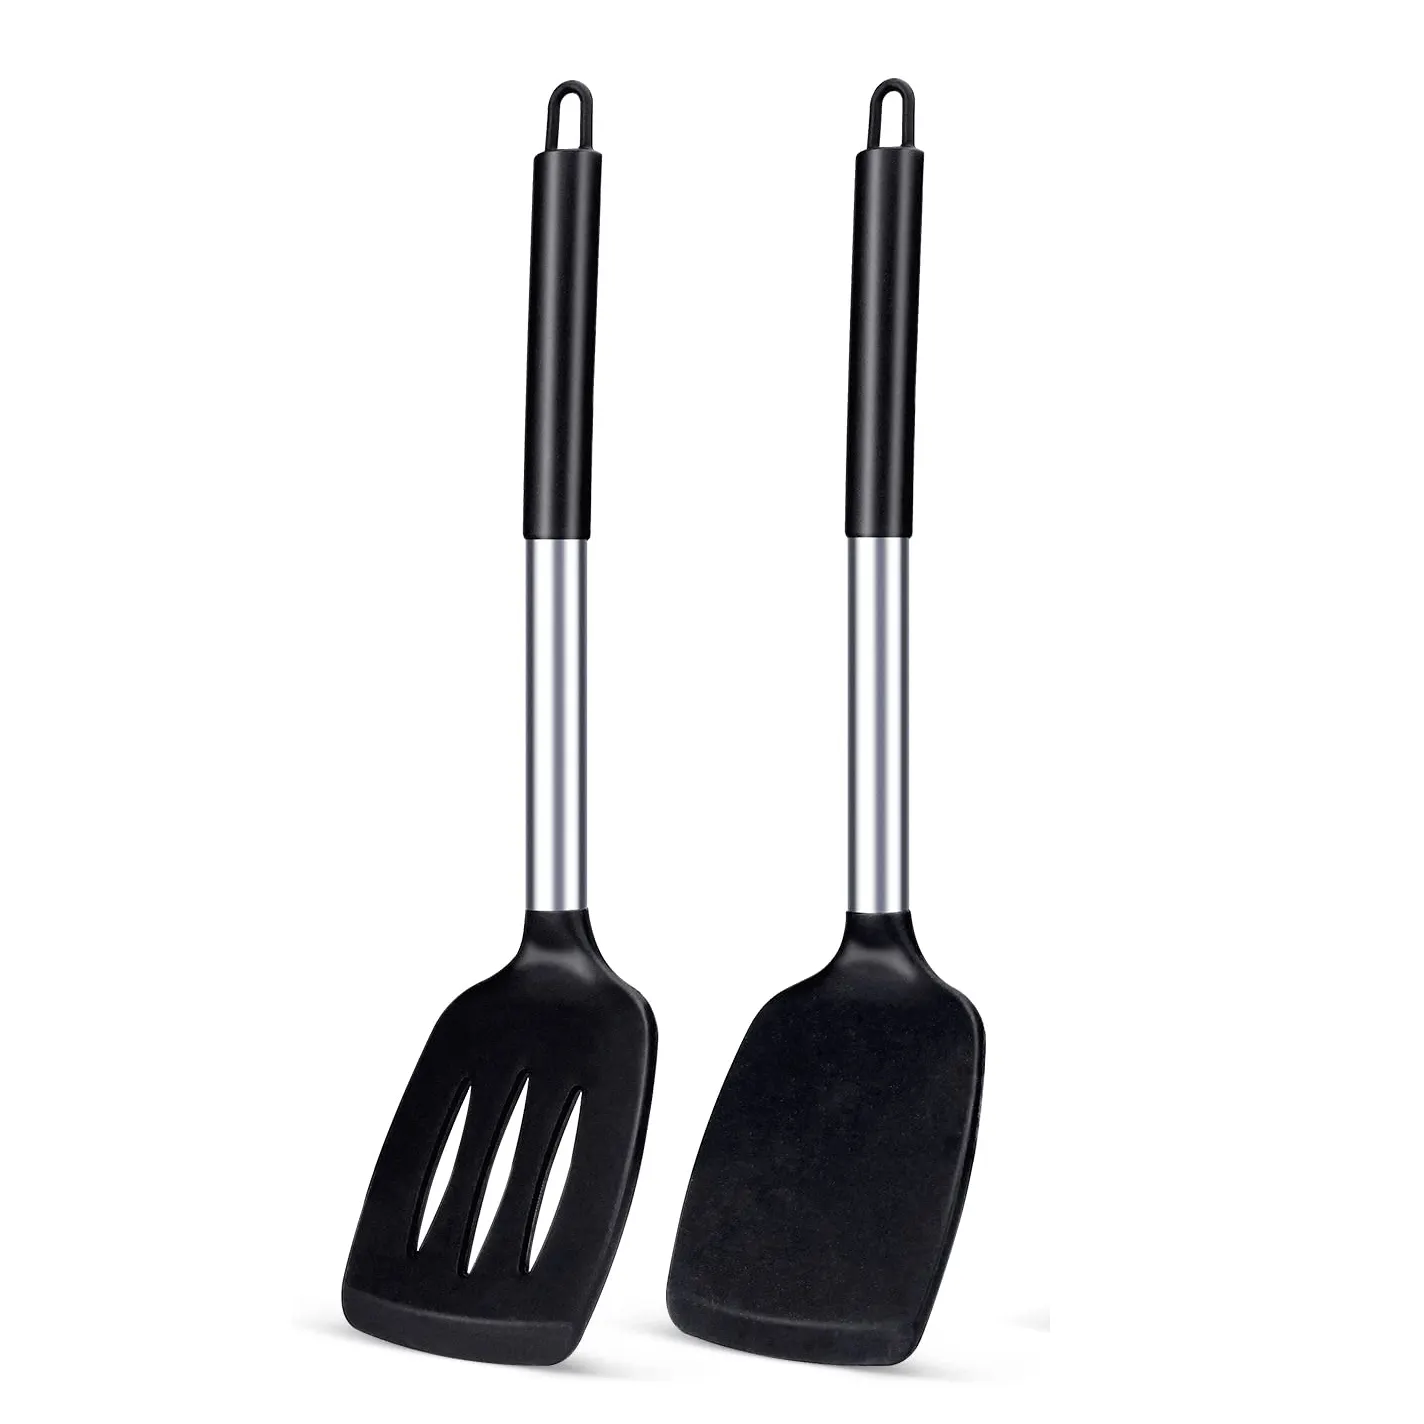 2 cái/bộ Silicone rắn Turner không dính rãnh bếp spatulas chịu nhiệt cao BPA miễn phí nấu ăn đồ dùng lý tưởng đồ nấu nướng